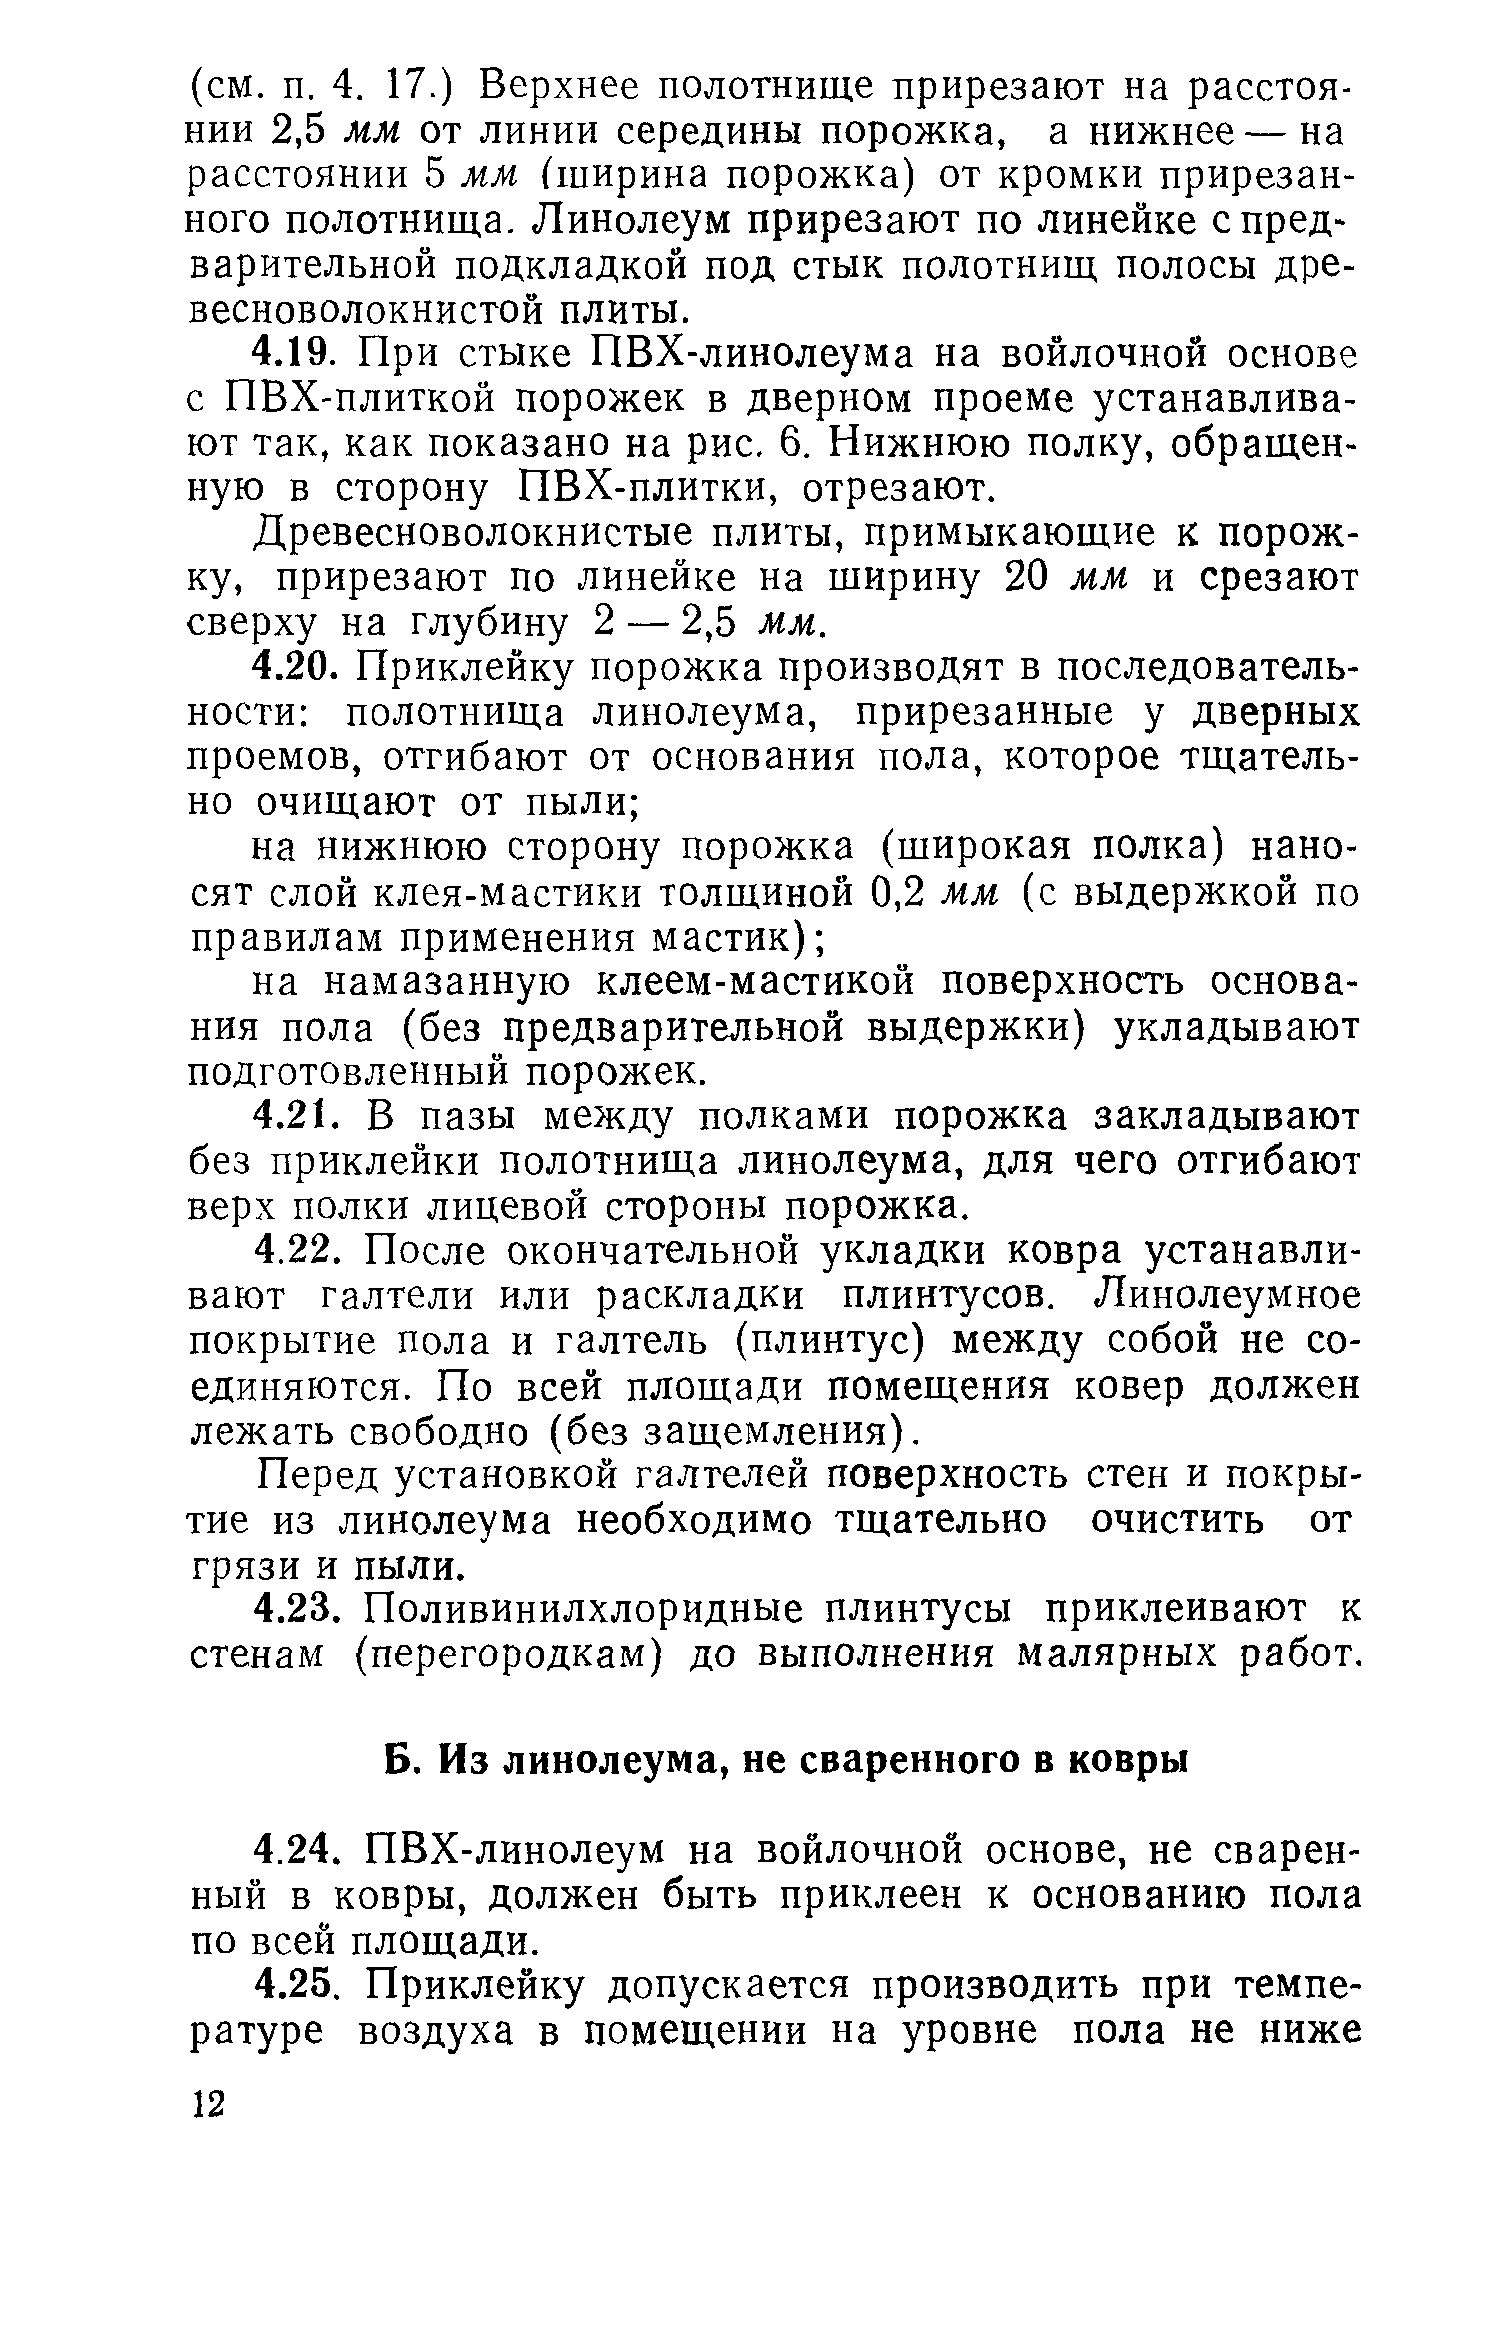 ВСН 4-71/Госгражданстрой